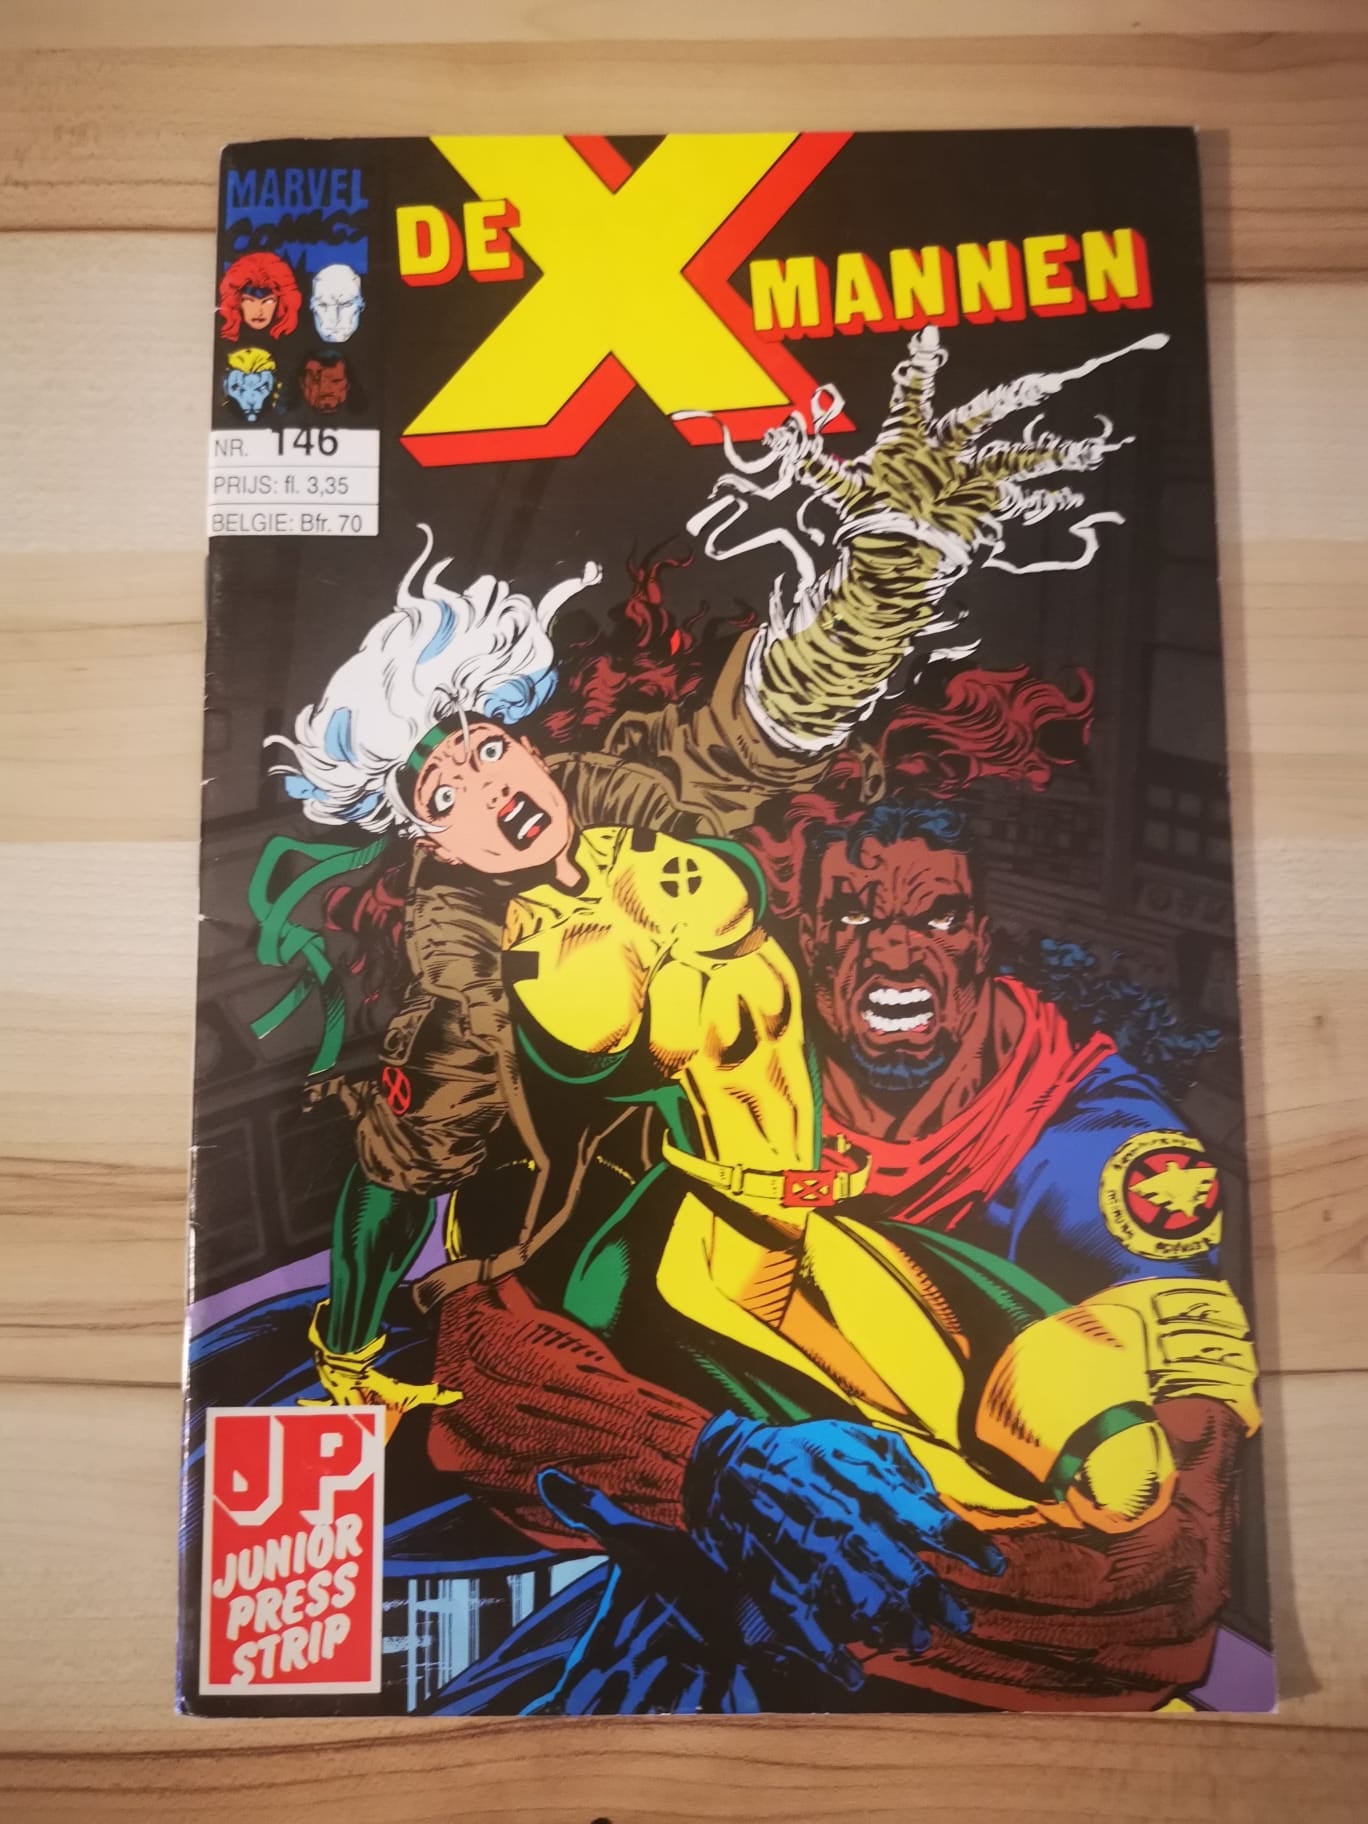 X-mannen #146